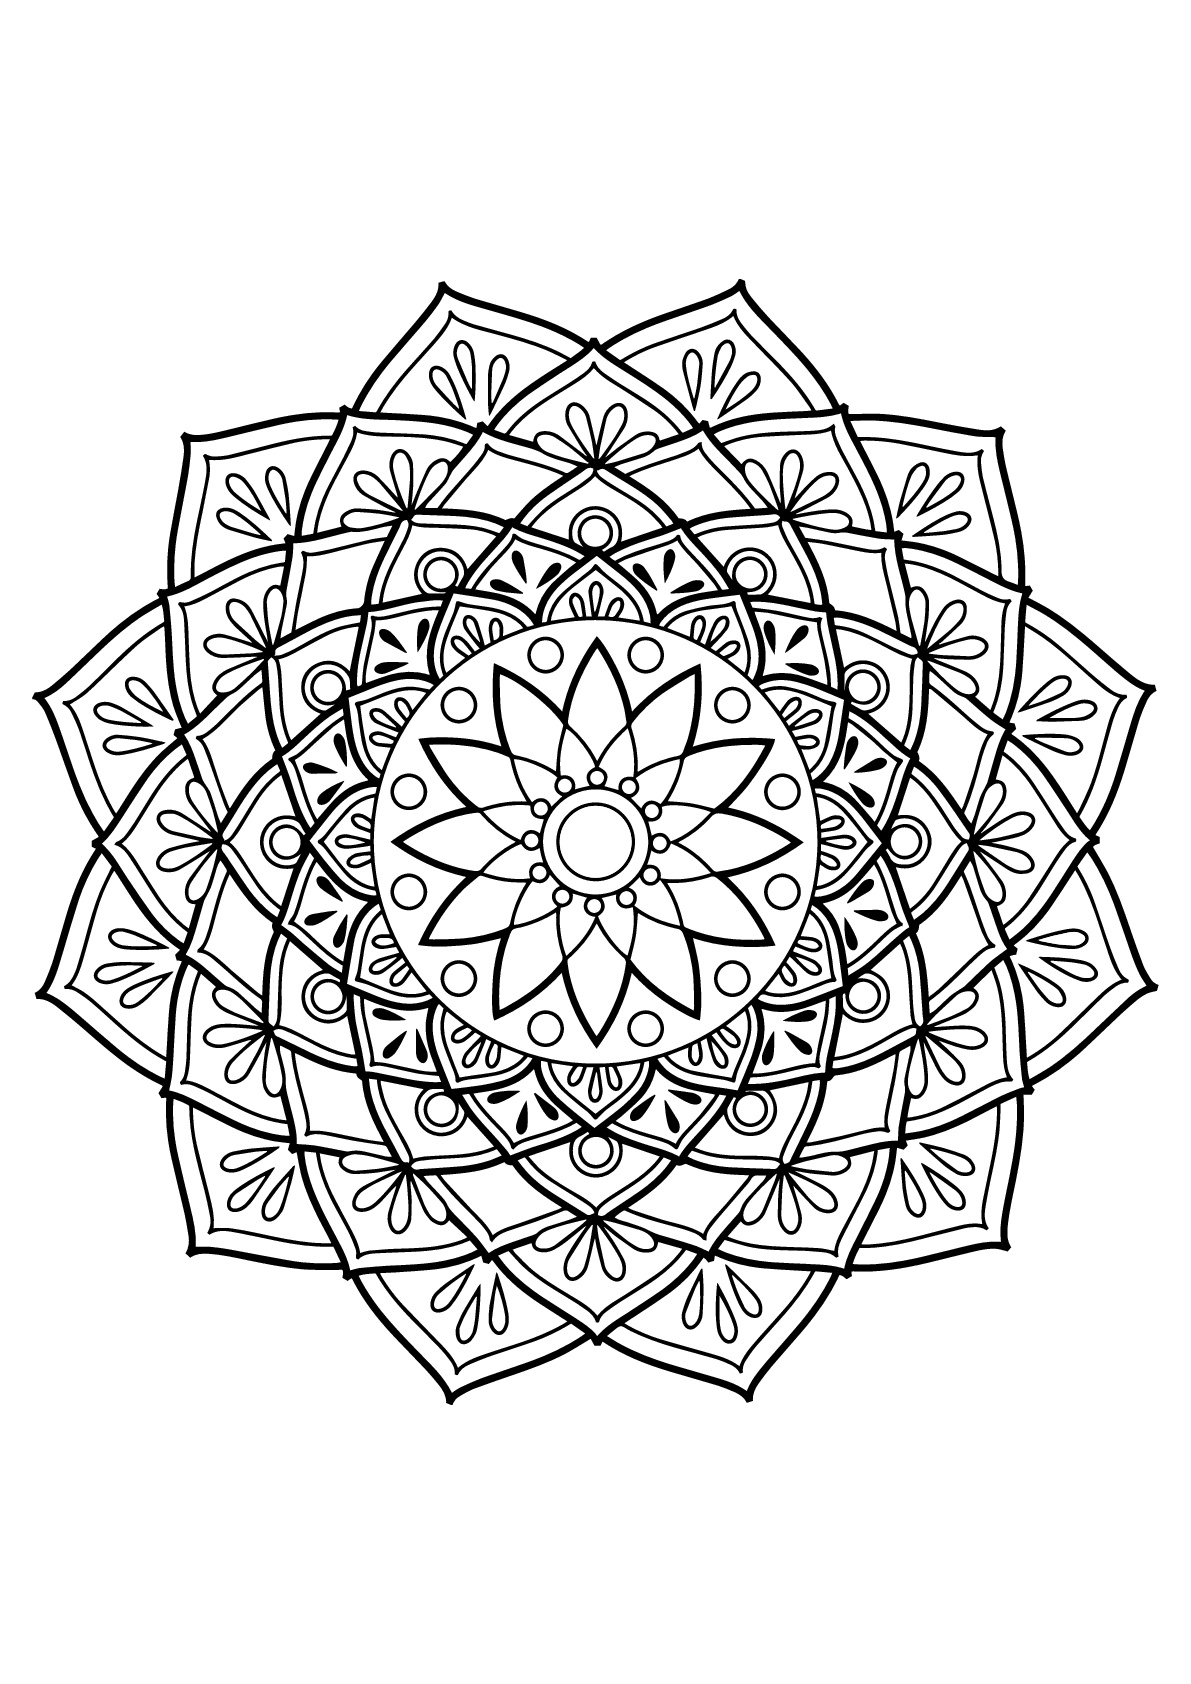 Mandala complexe tiré d'un livre de coloriages gratuit